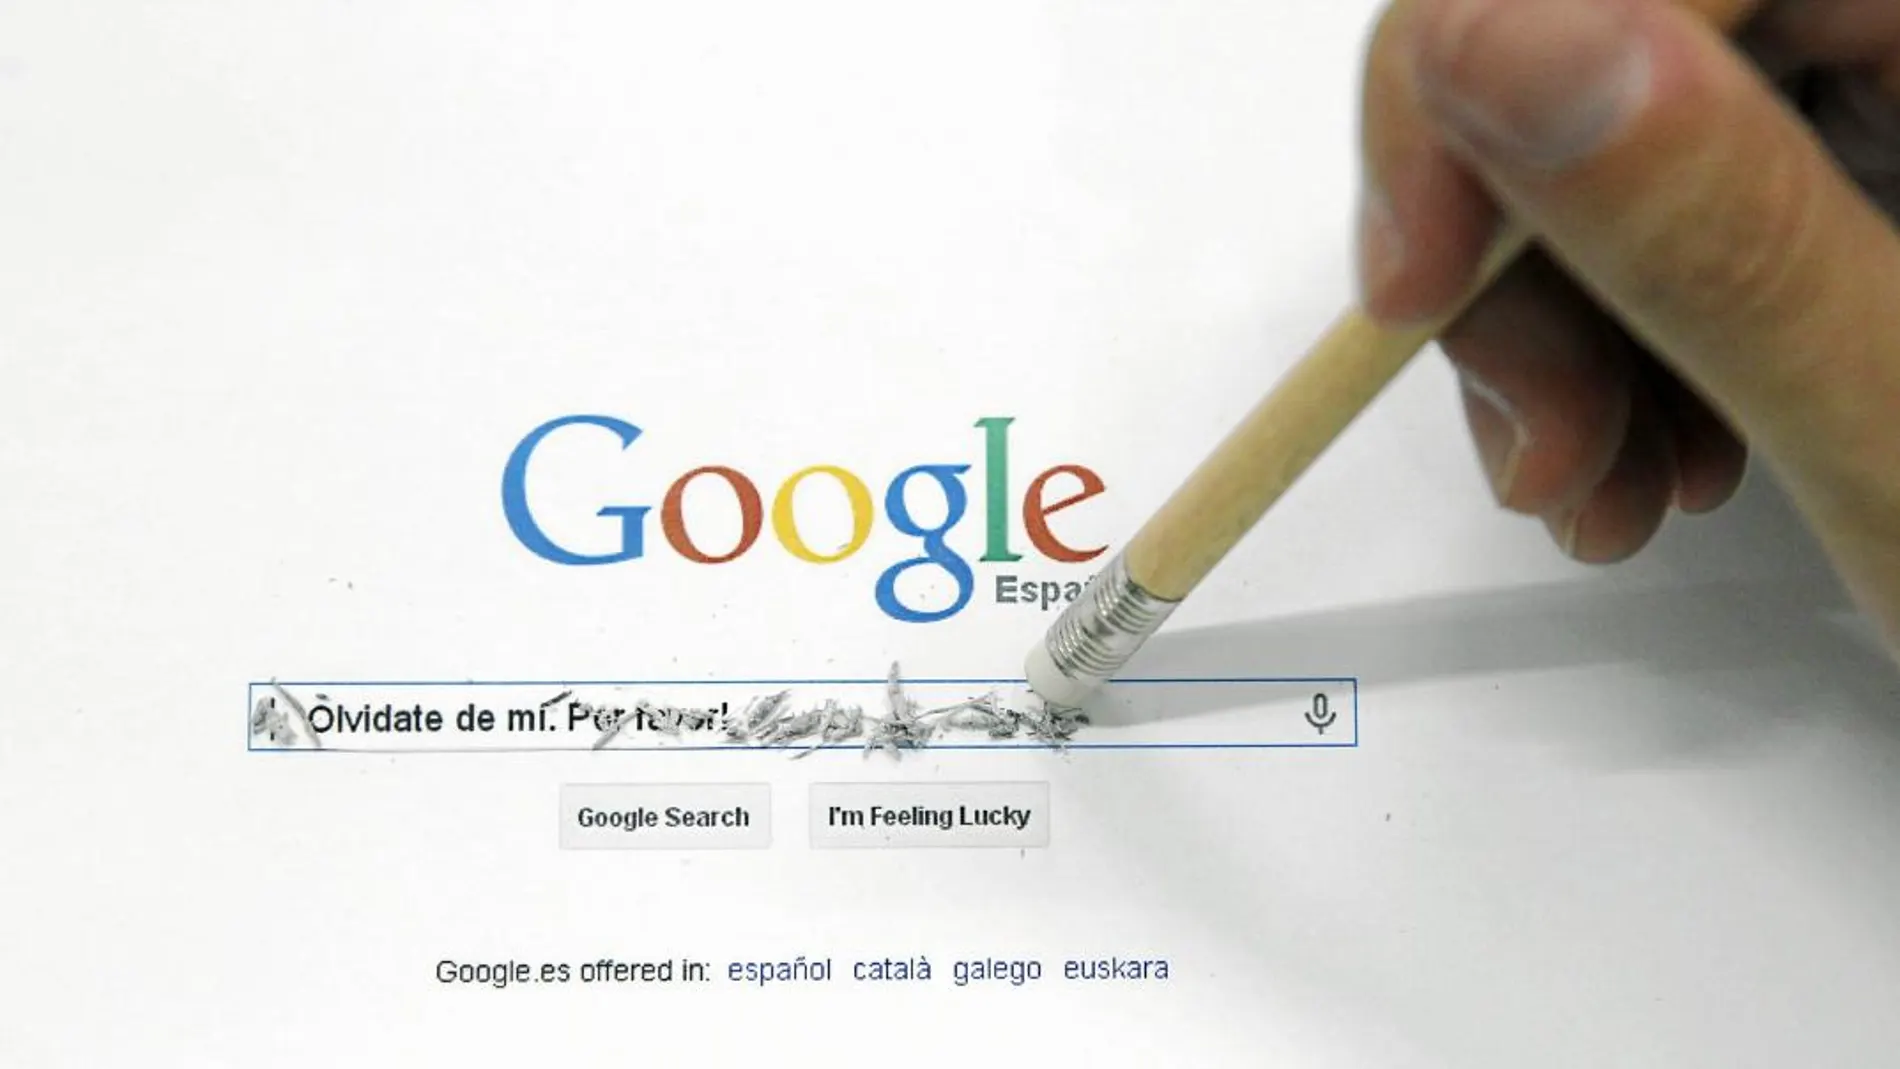 Ahora tenemos que aprender a escribir para Google